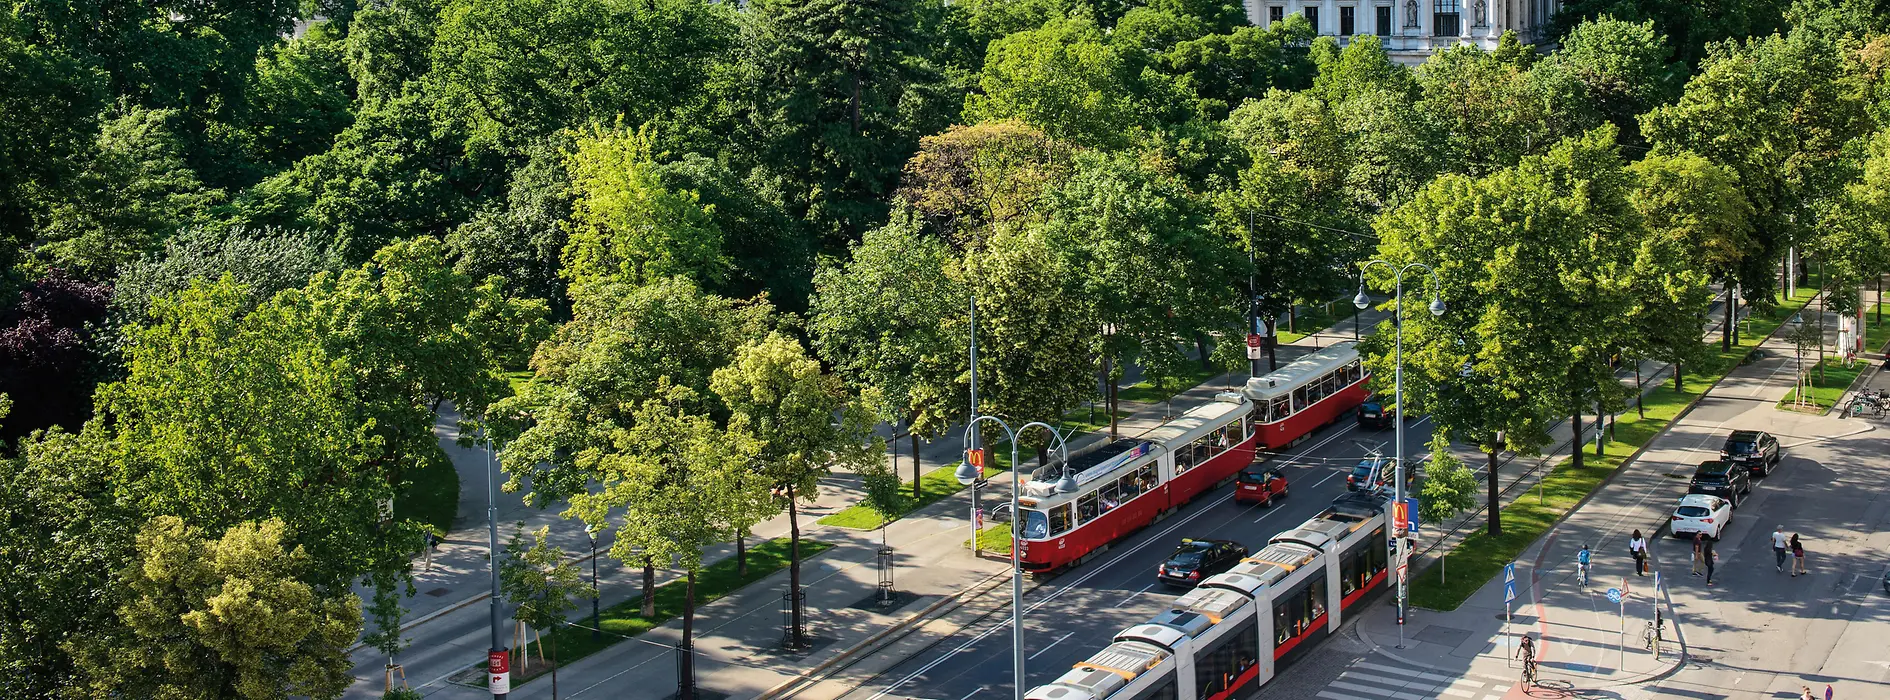 Трамвай на улице Рингштрассе